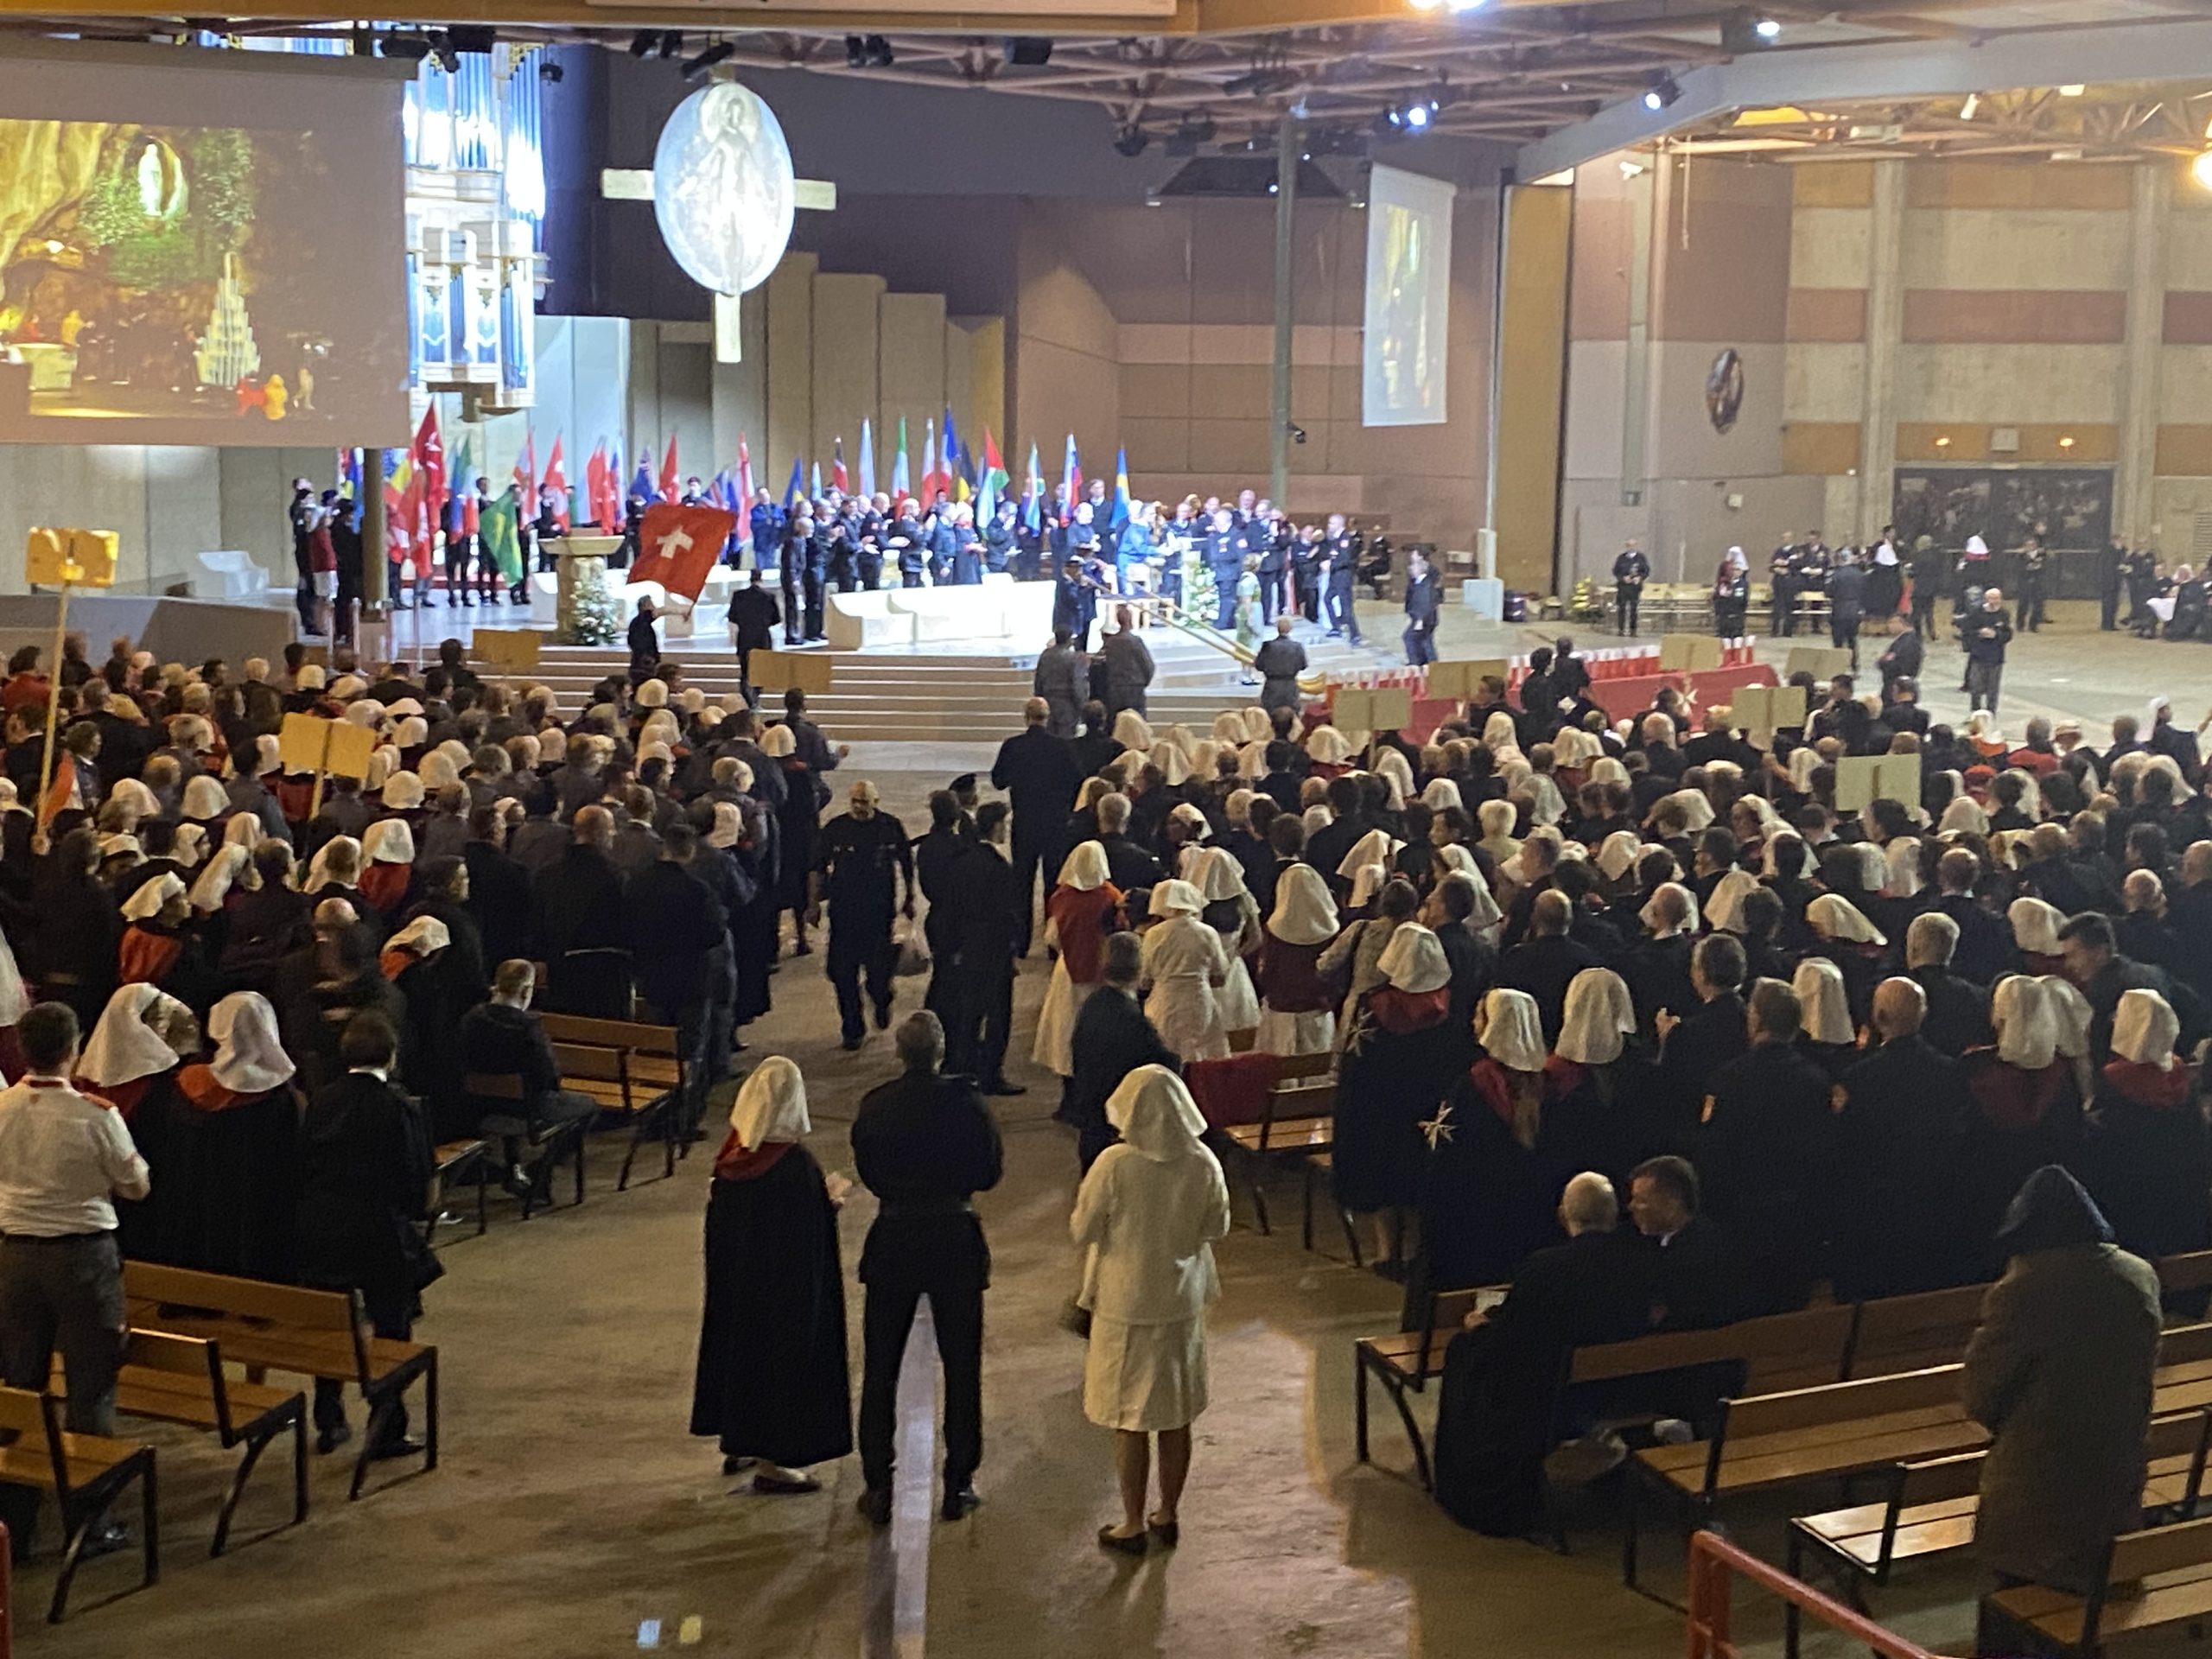 65ª peregrinación internacional a Lourdes, dirigida por el Gran Maestre Frey John Dunlap